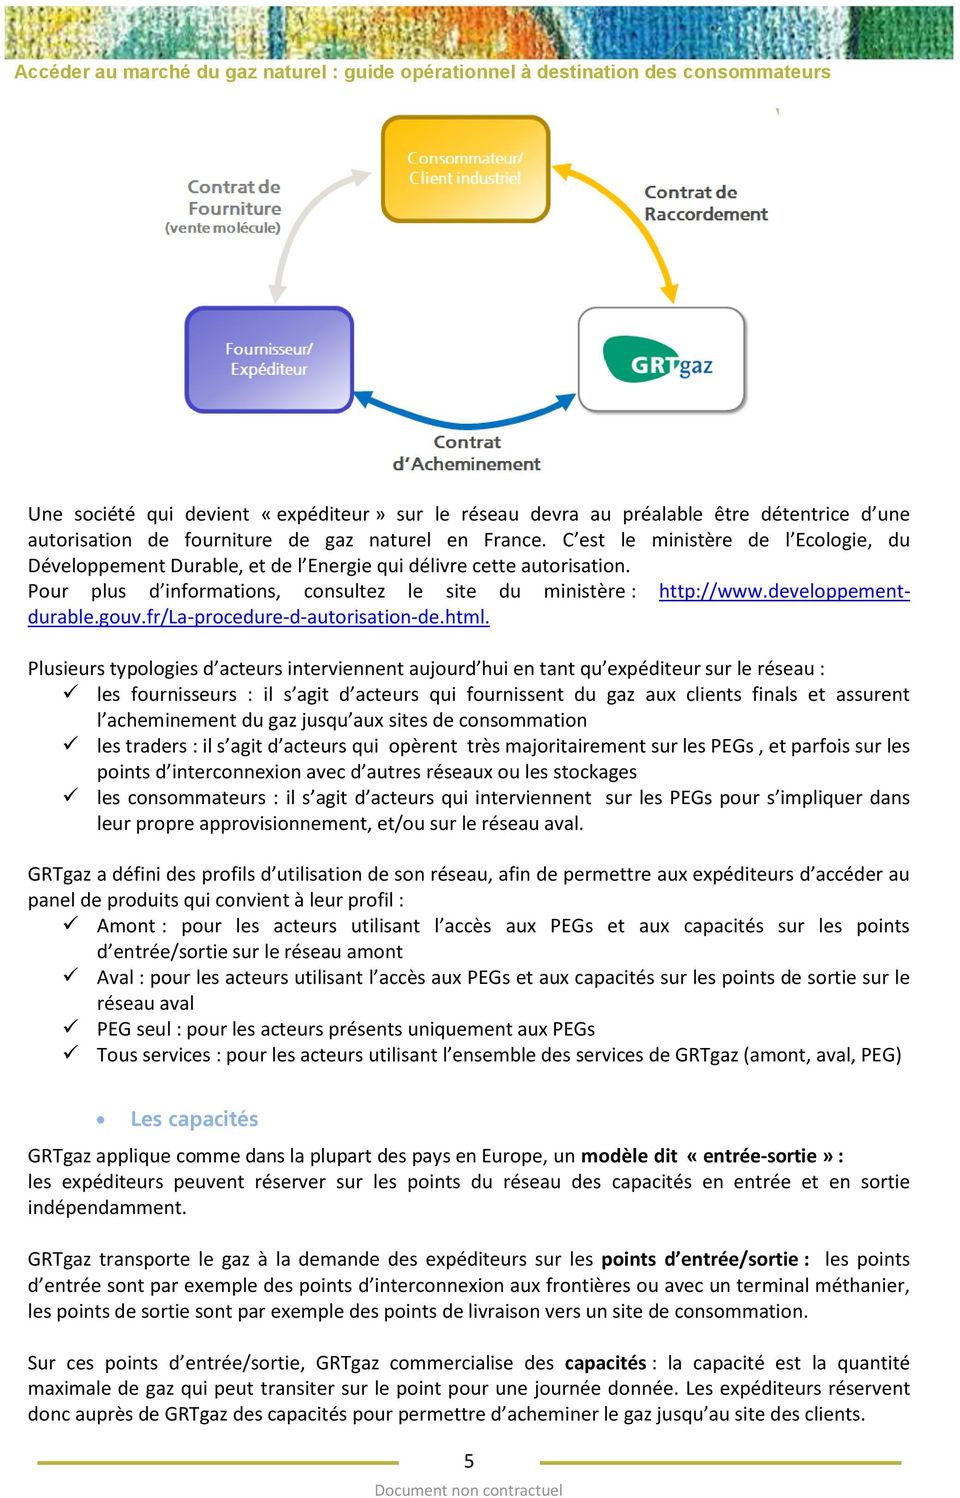 gouv.fr/la-procedure-d-autorisation-de.html.